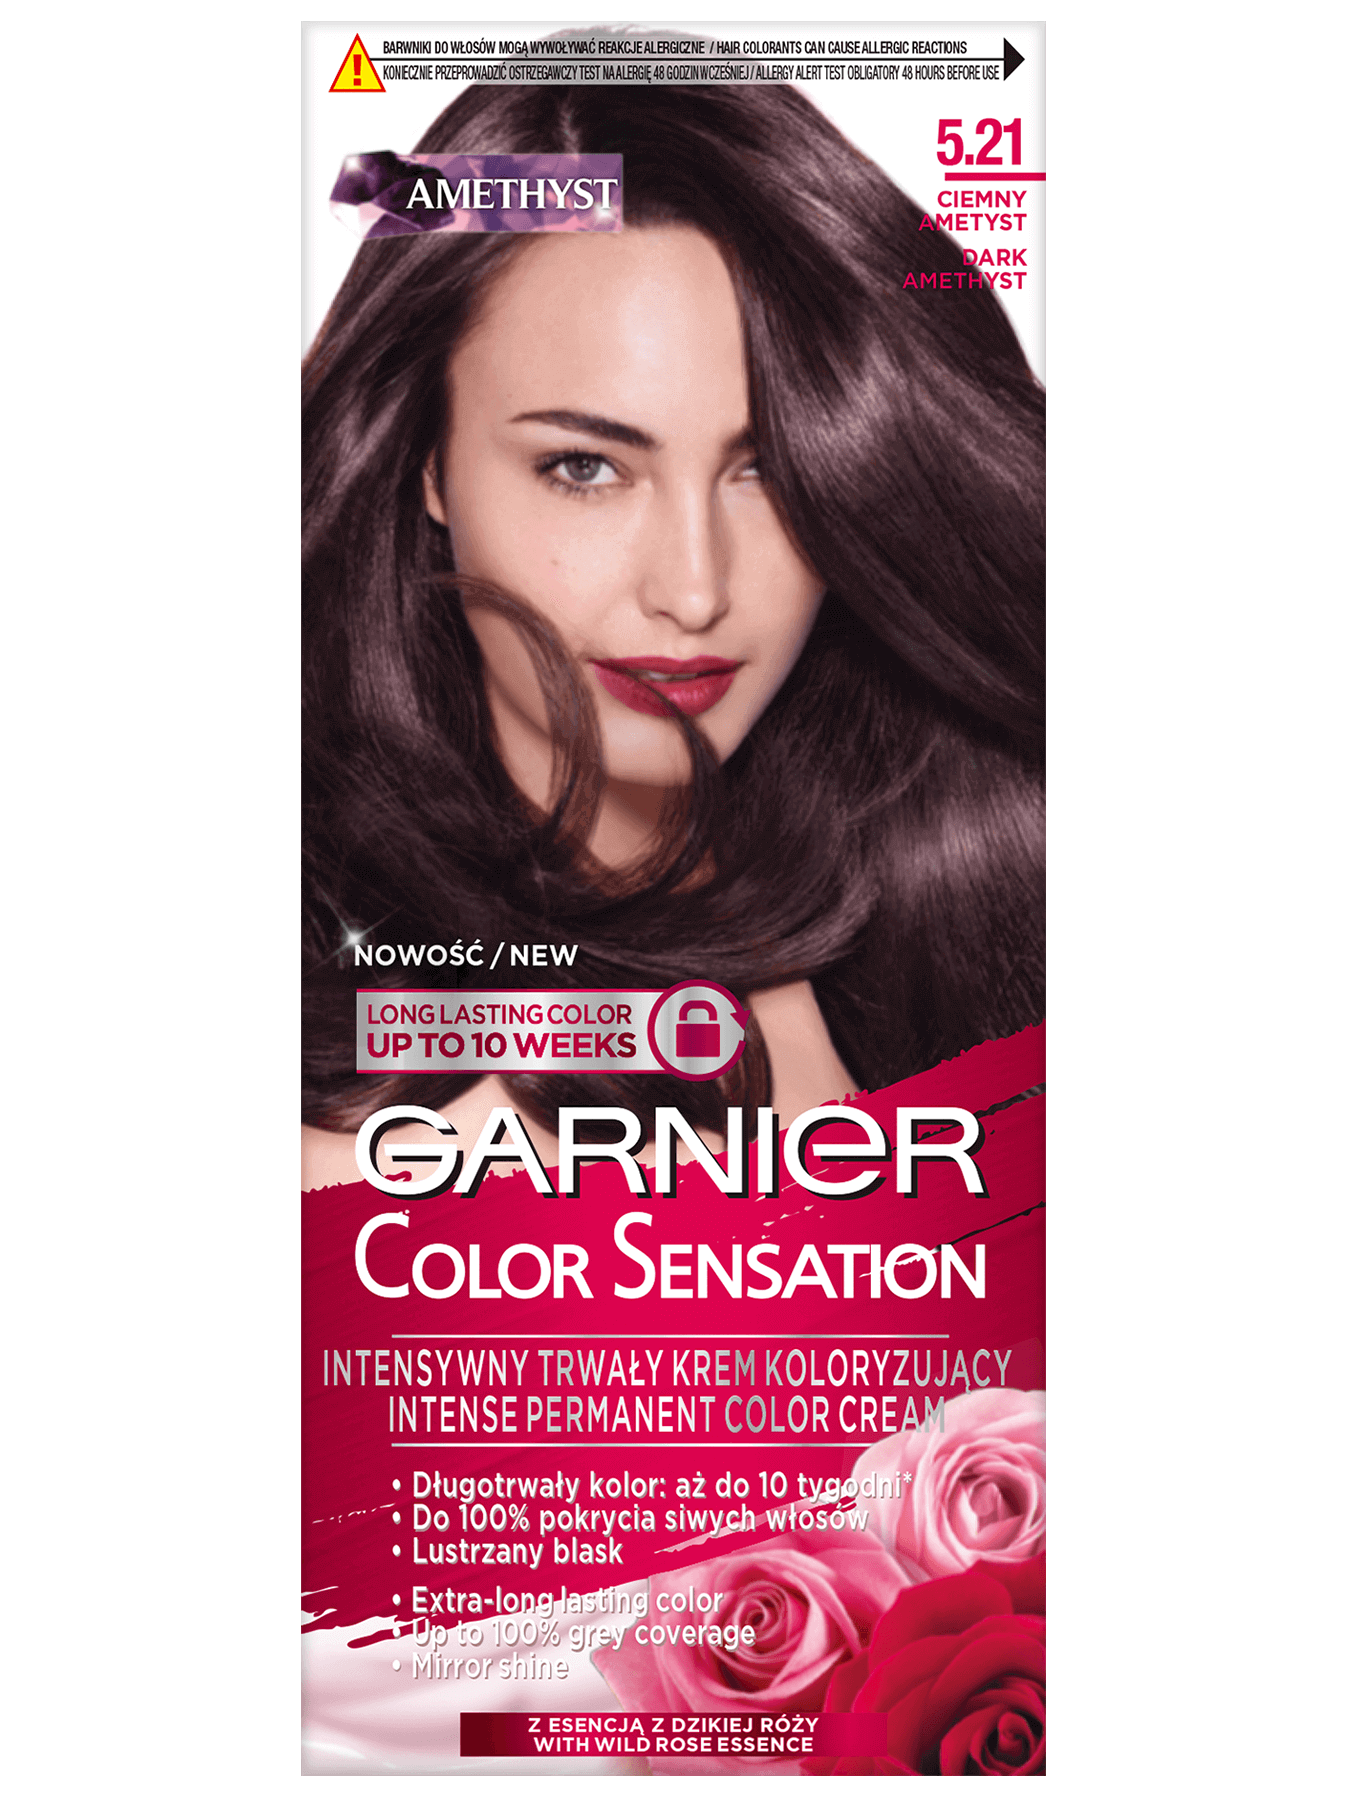 garnier color sensation 5 2 1 ciemny ametyst 1350x1800